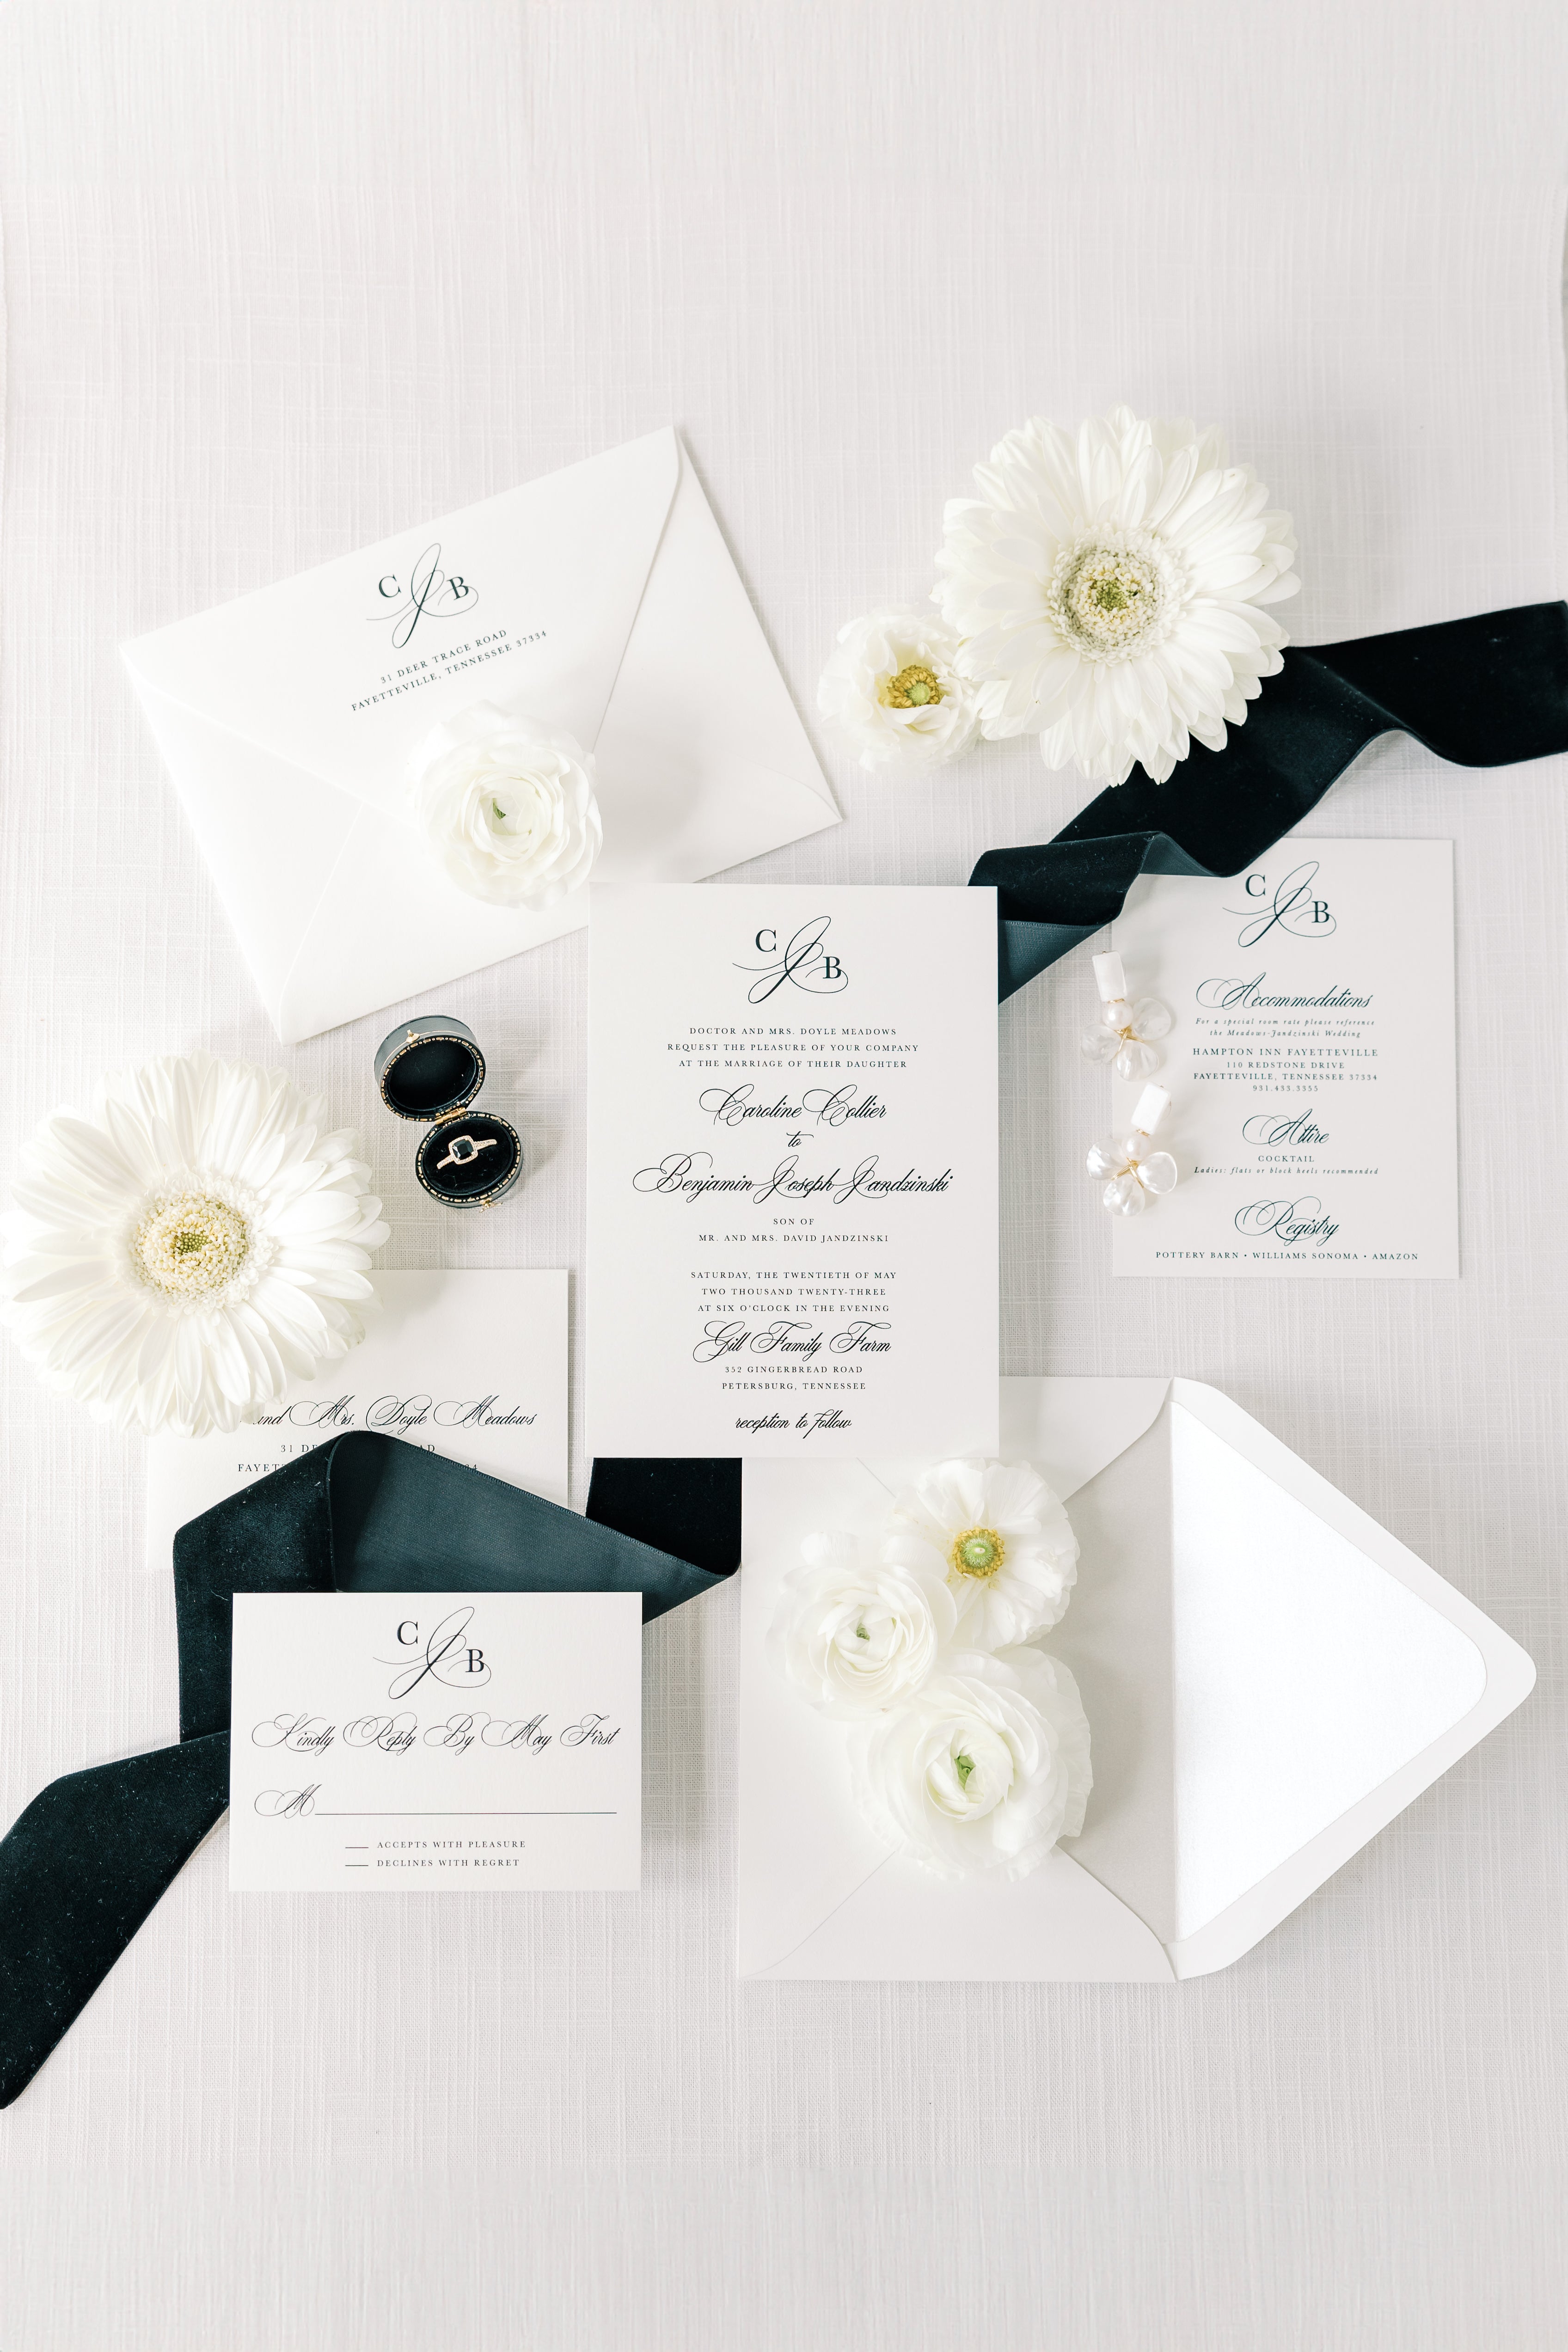 Ledgewood-Fine-Stationery-Luxury-Wedding-Invitations-Black-And-White